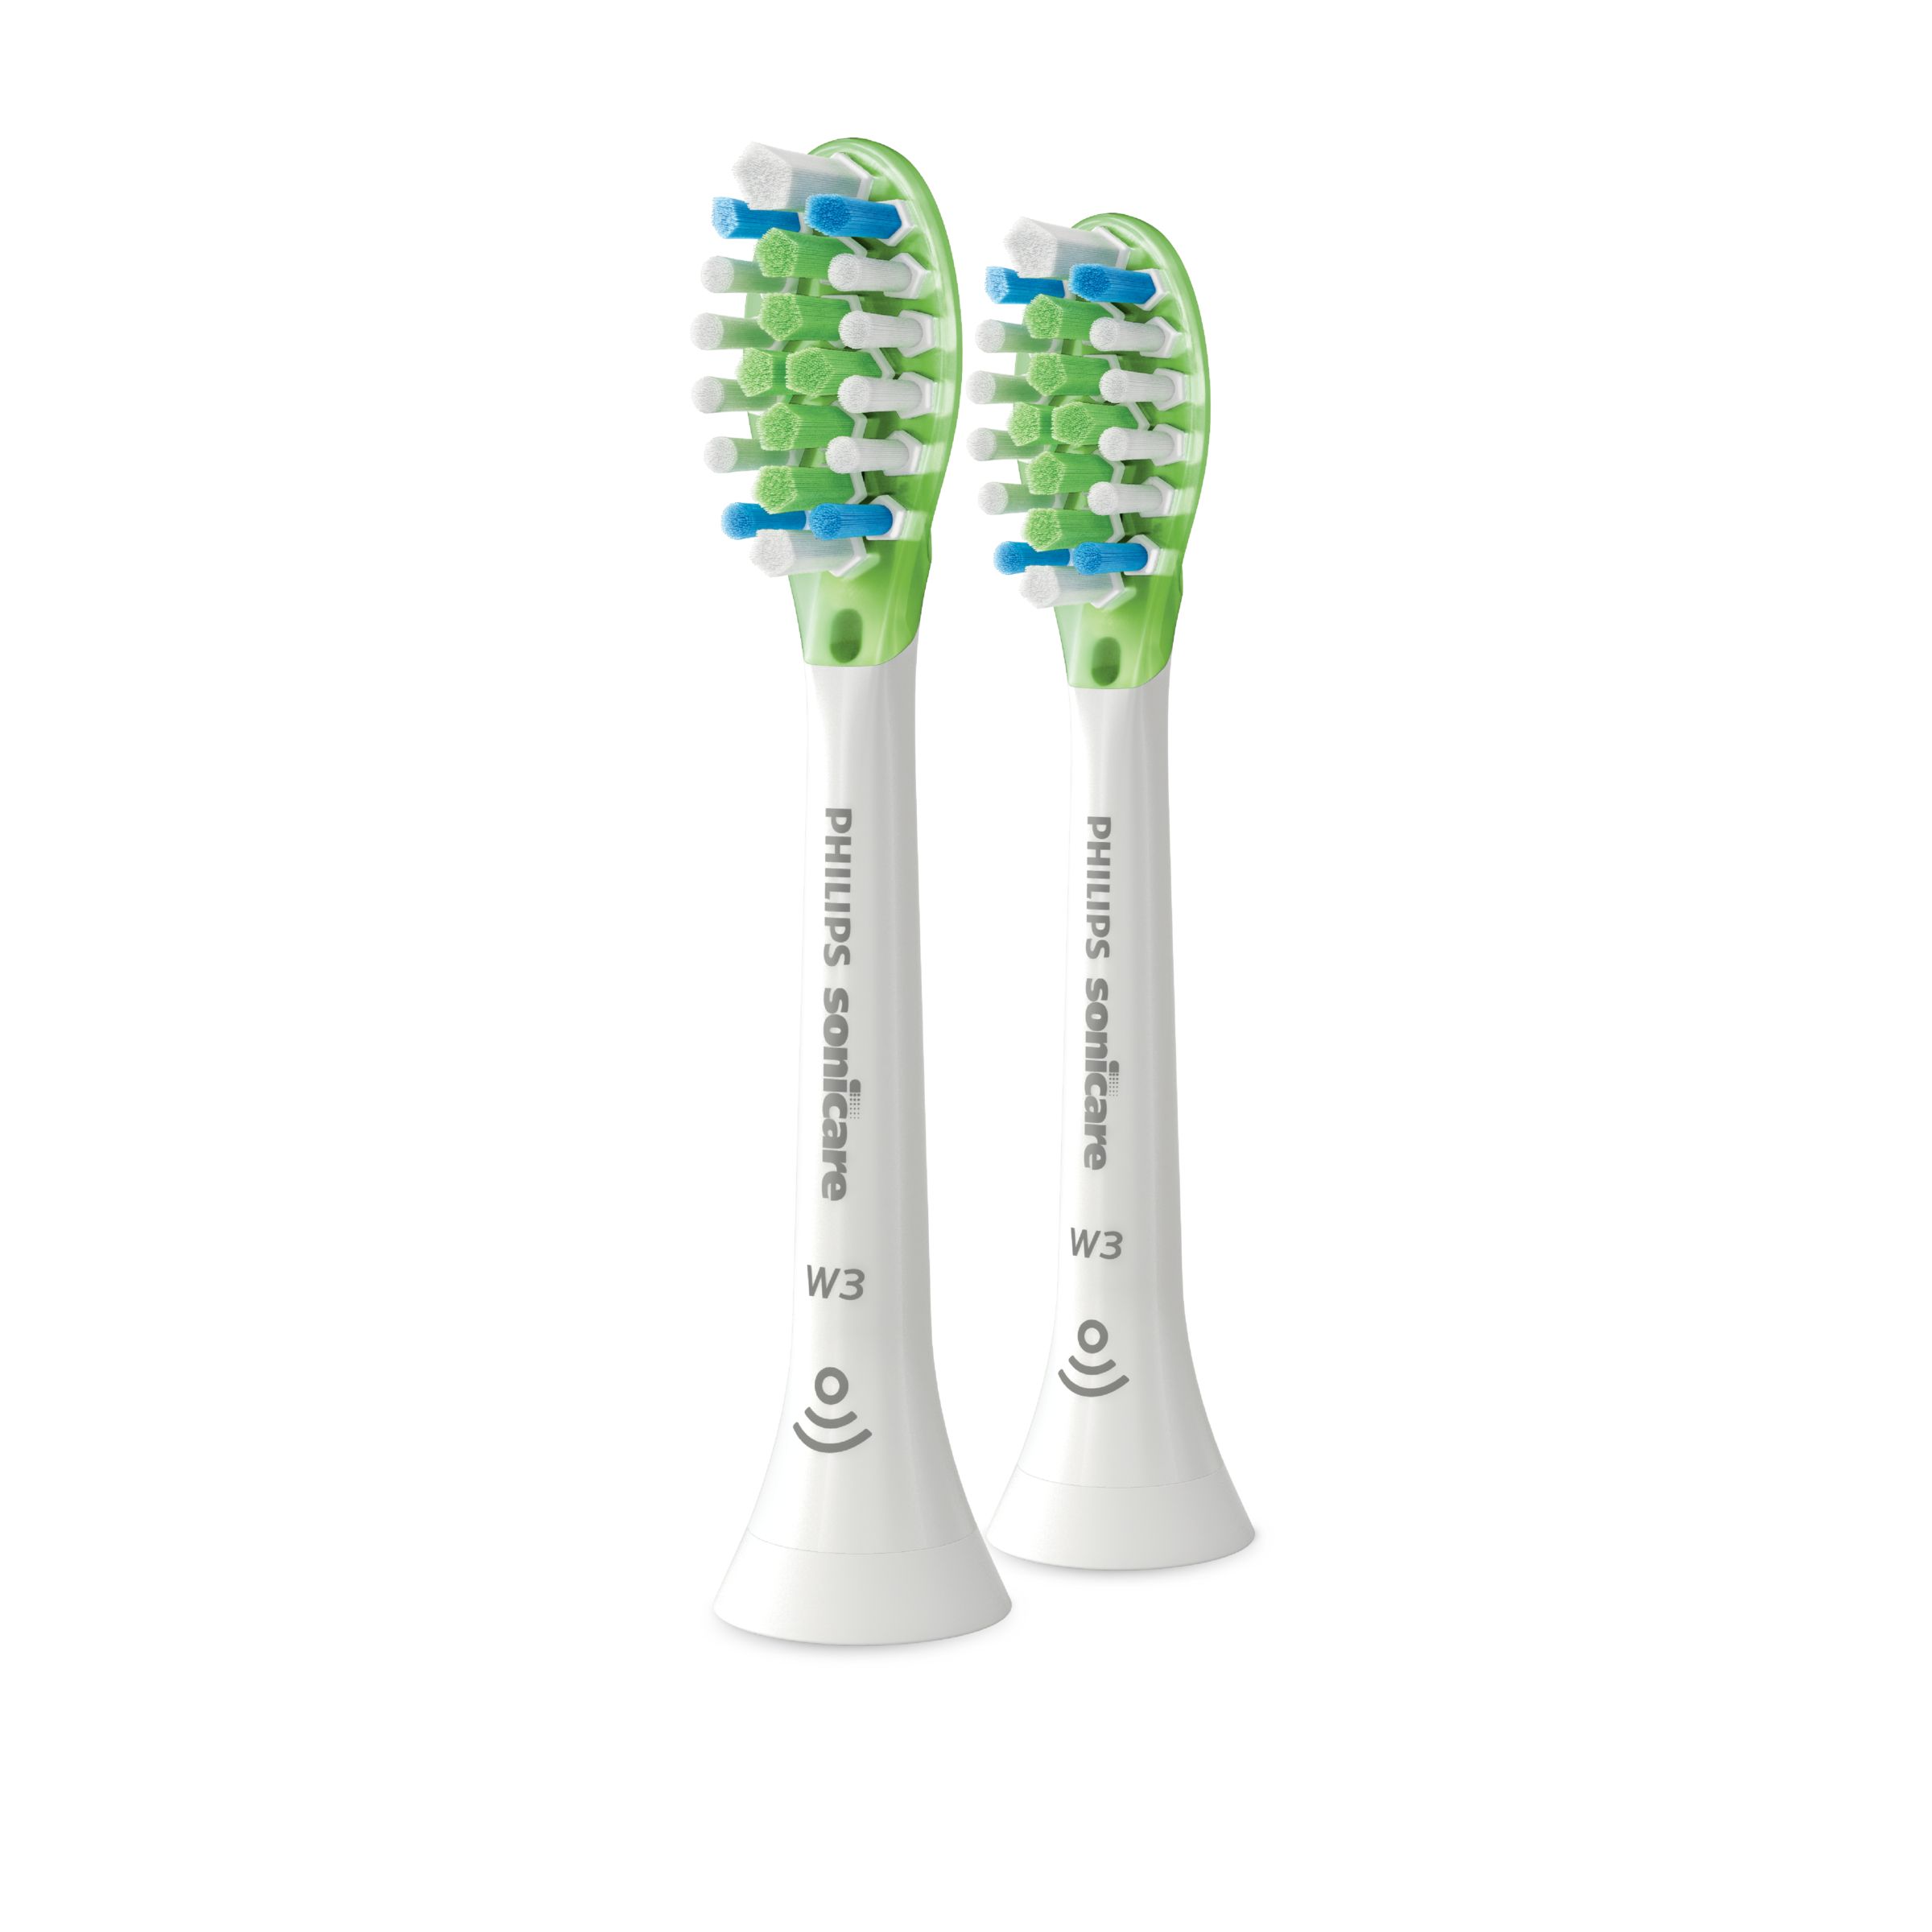 Image of Philips W3 Premium White - Standard sonic toothbrush heads - HX9062/65